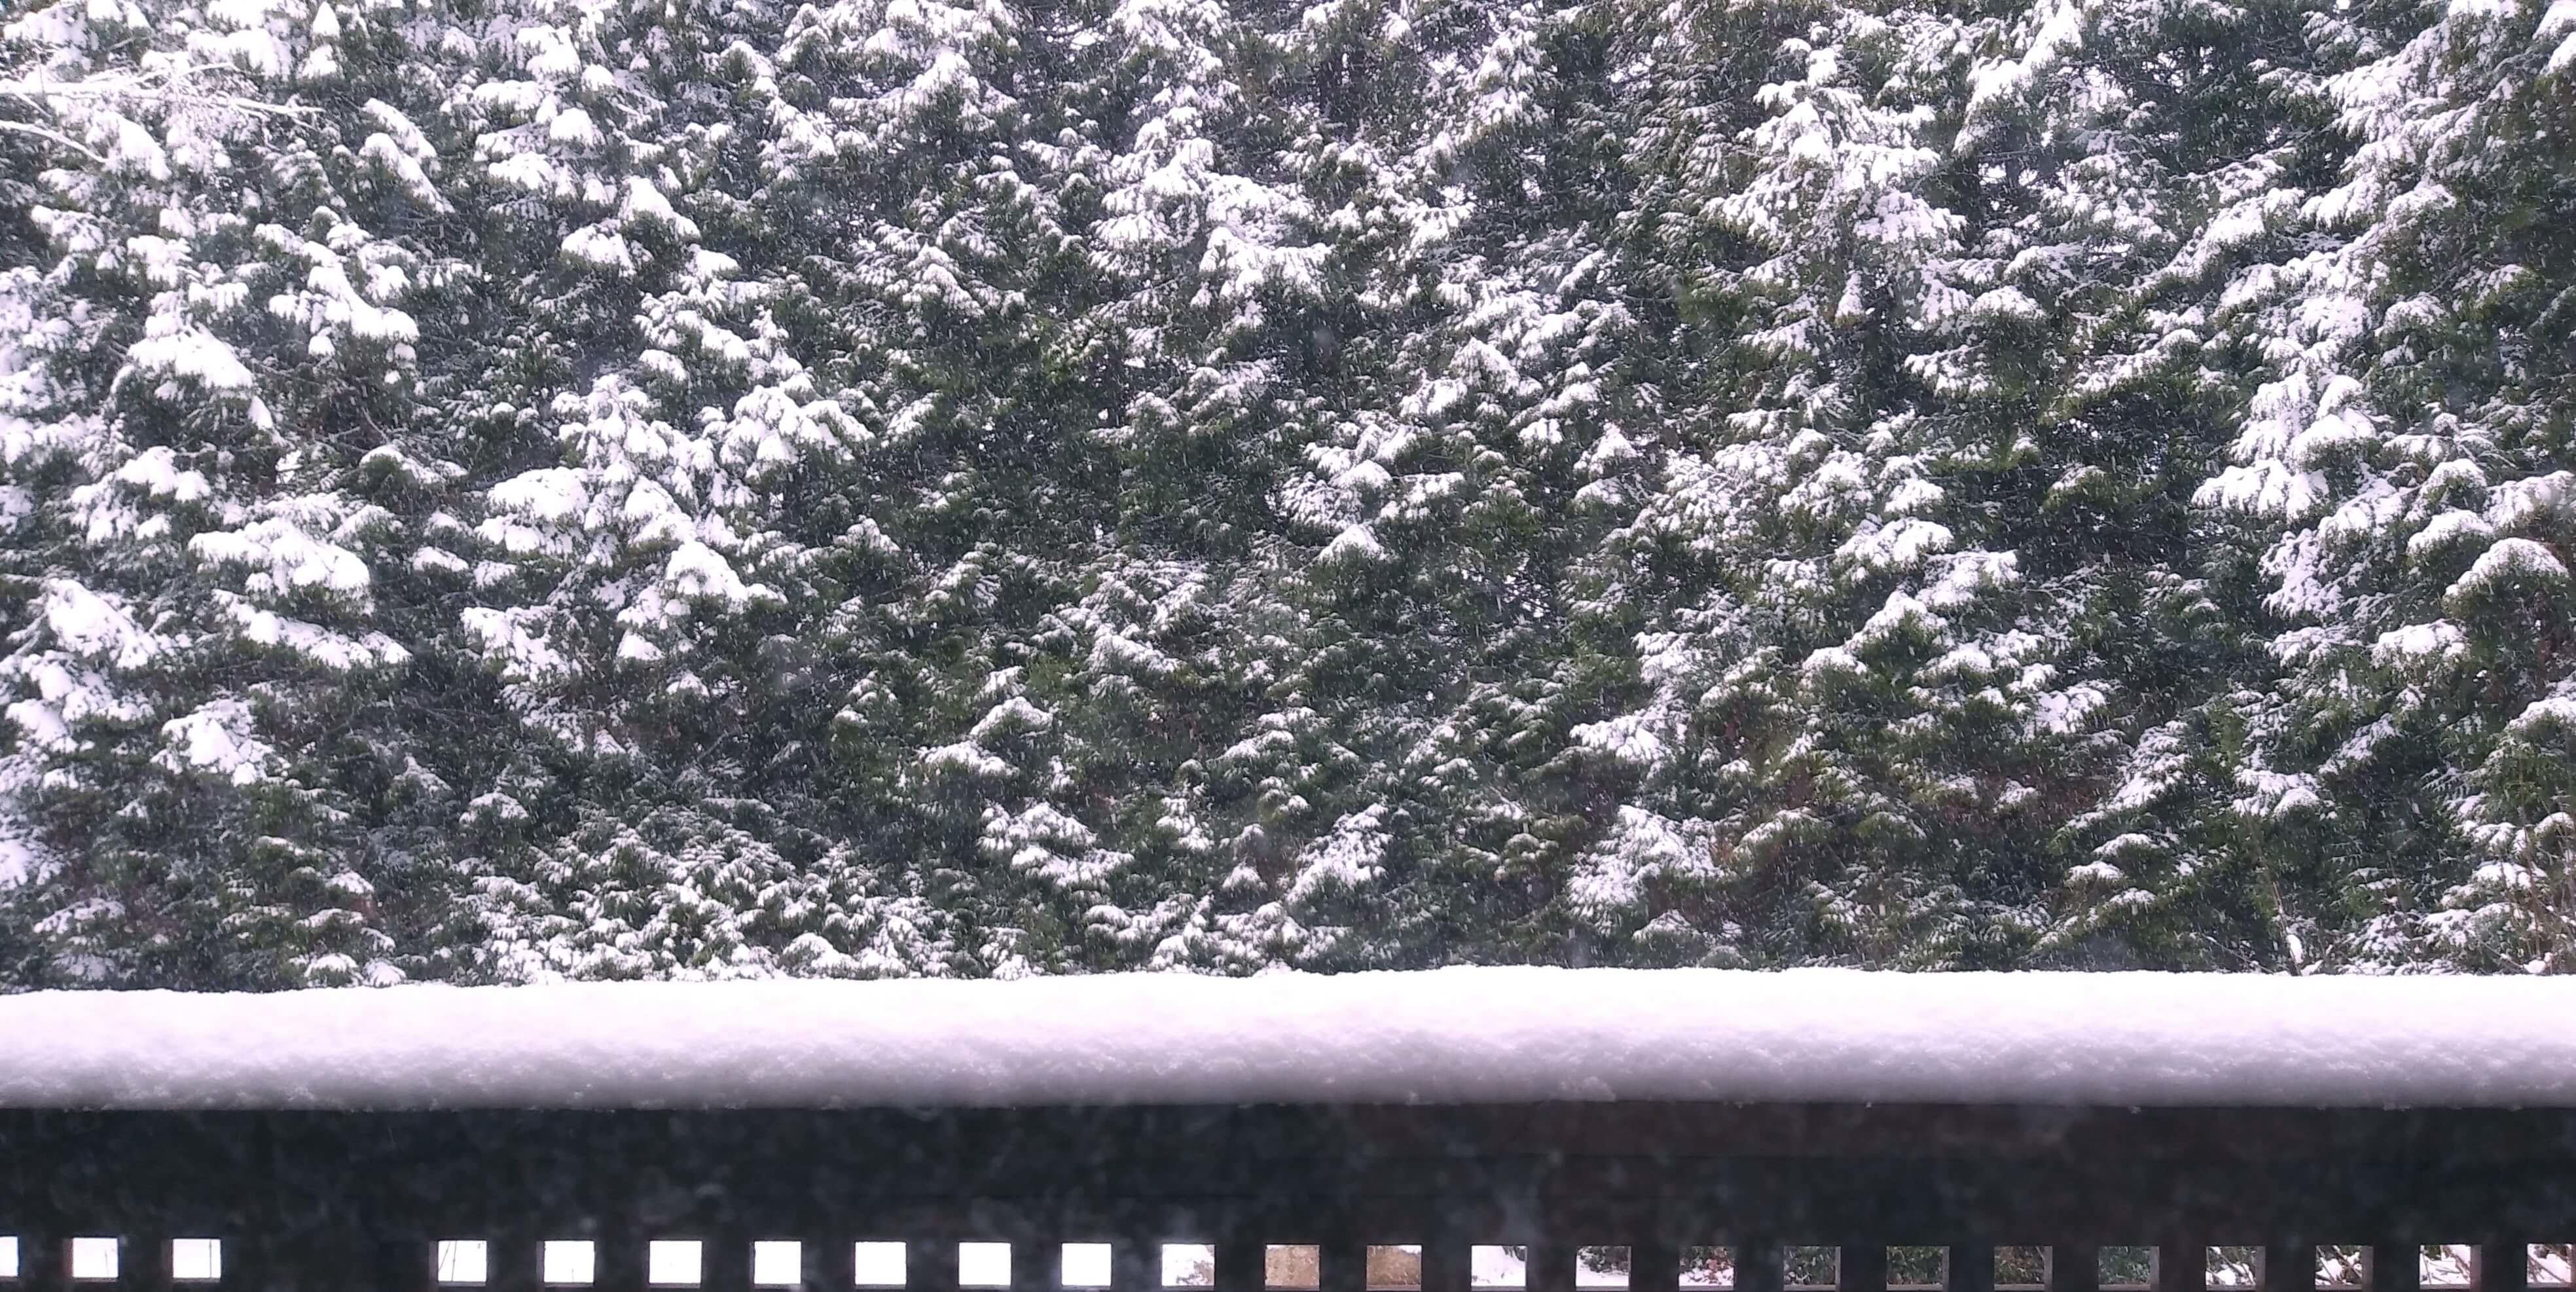 https://seo.g2soft.net/images/snow.jpg